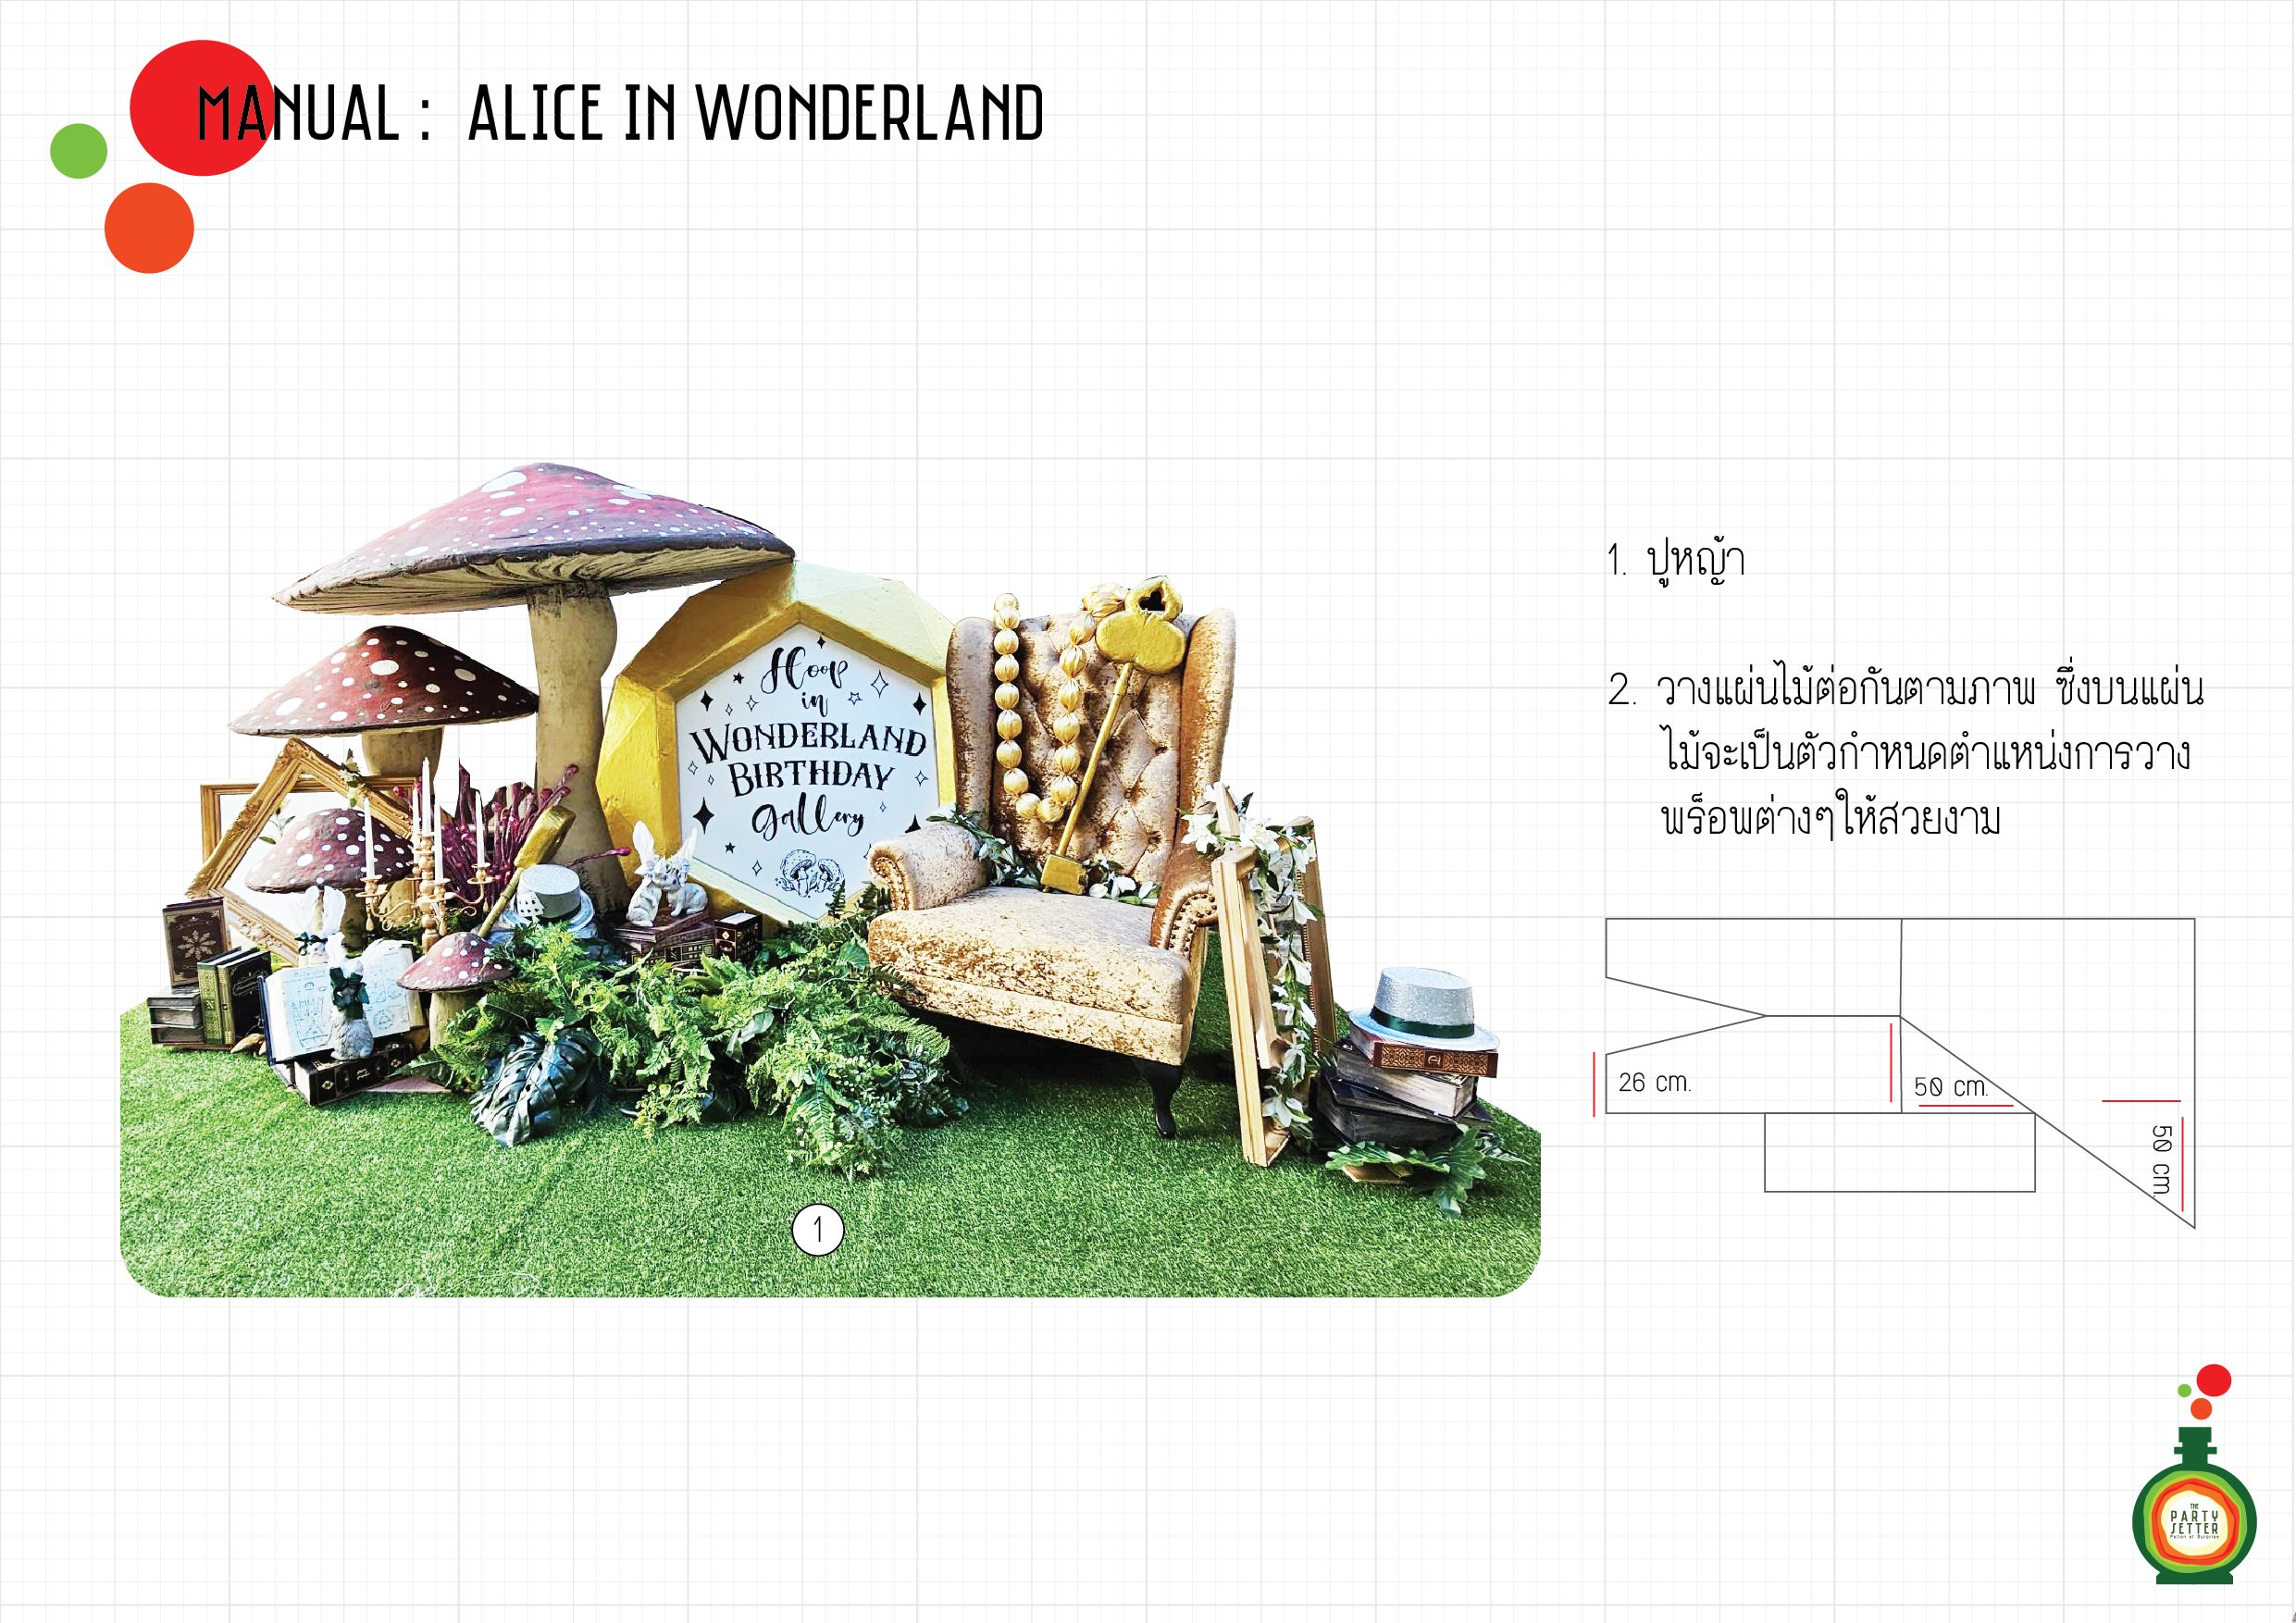 Manual_Alice in Wonderland_01-01.jpg